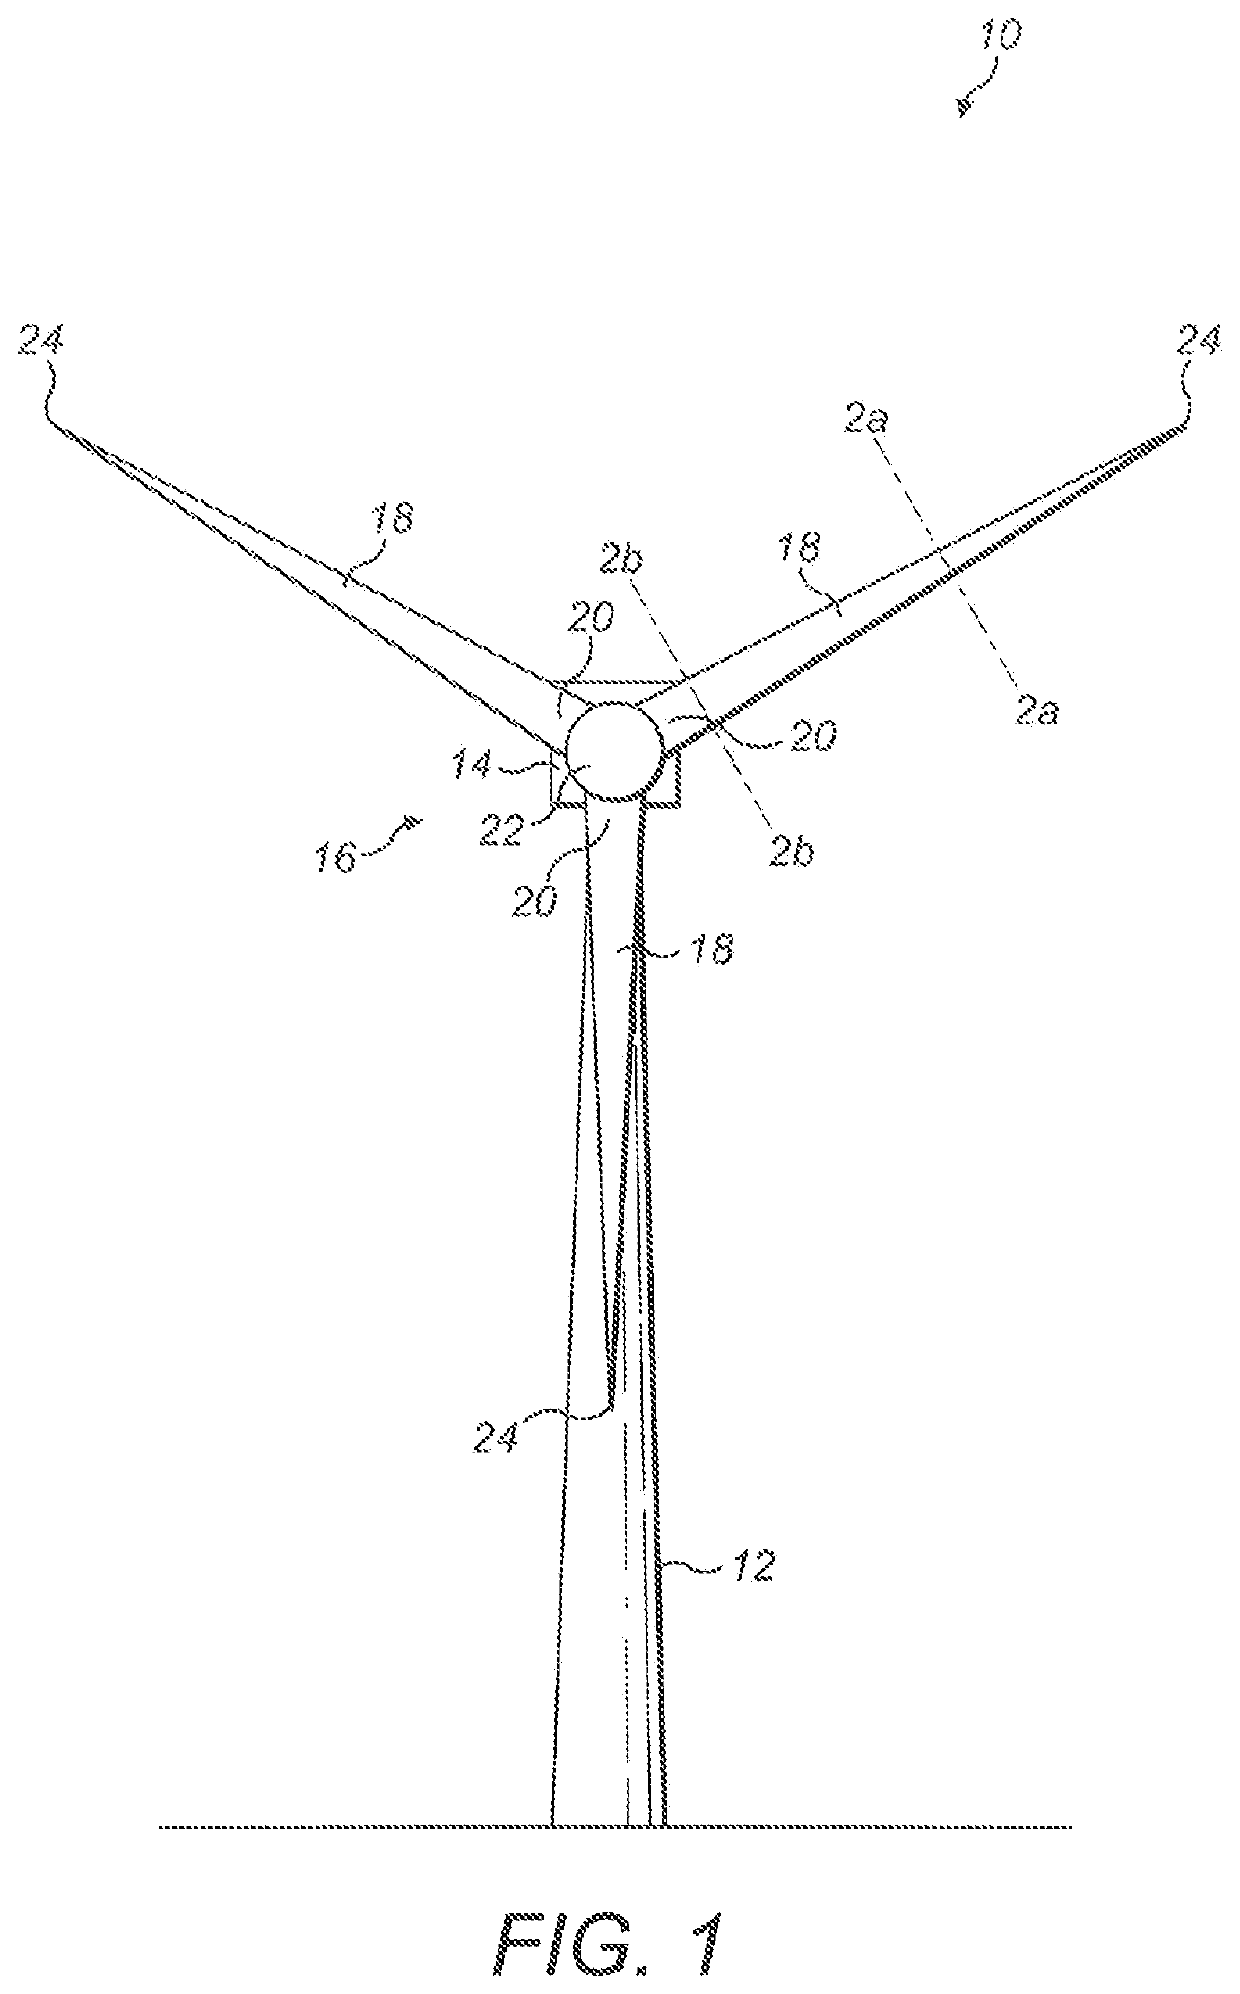 Manufacture of a wind turbine blade